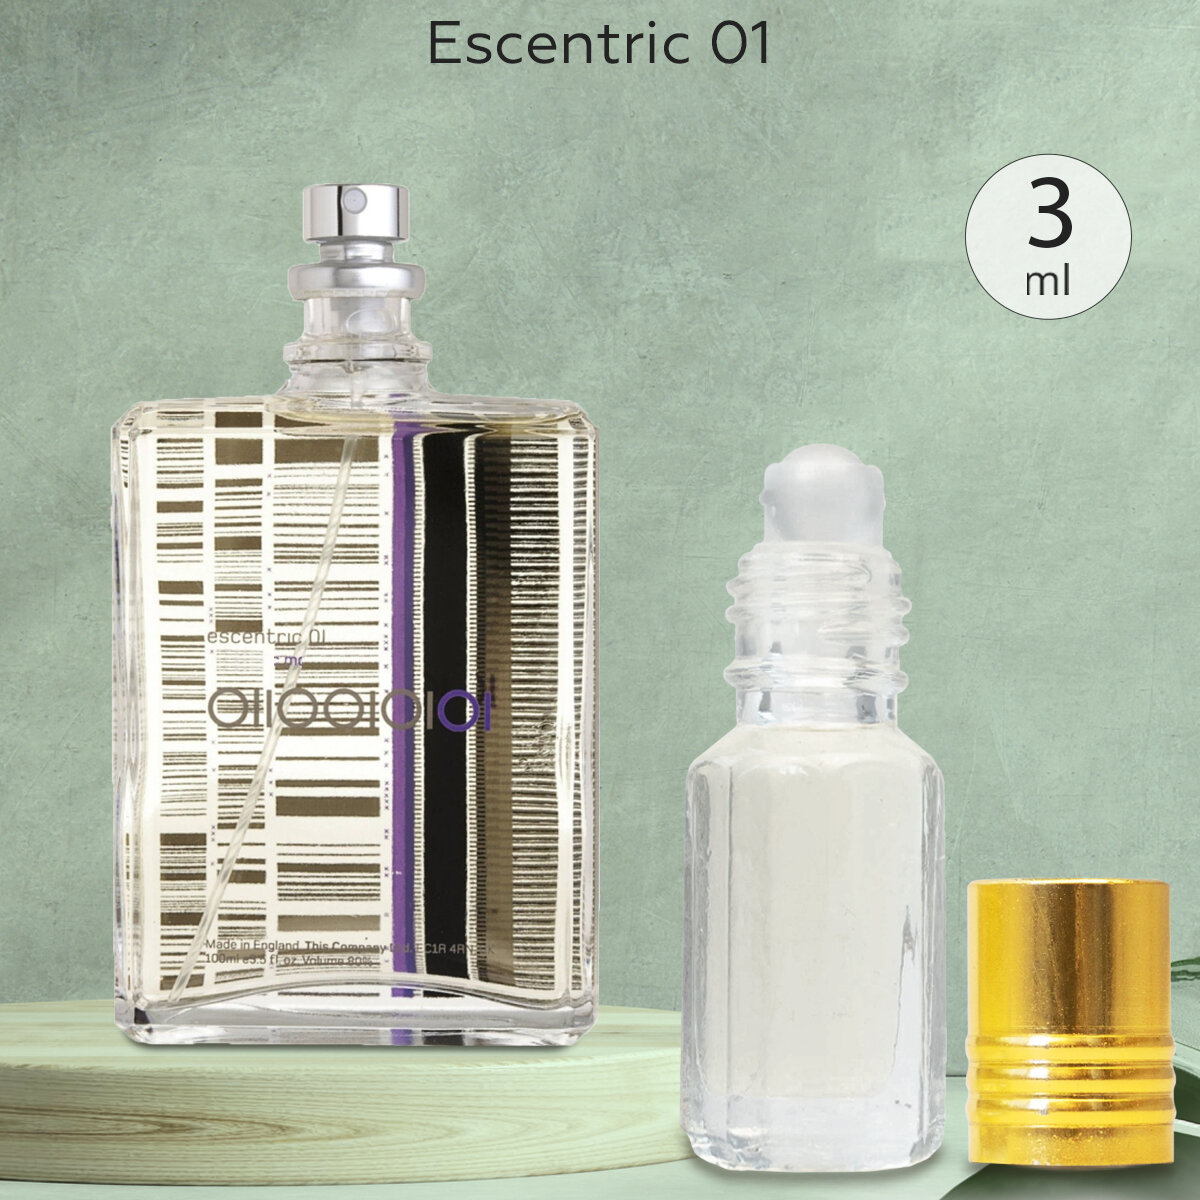 Gratus Parfum Escentric 01 духи унисекс масляные 3 мл (масло) + подарок